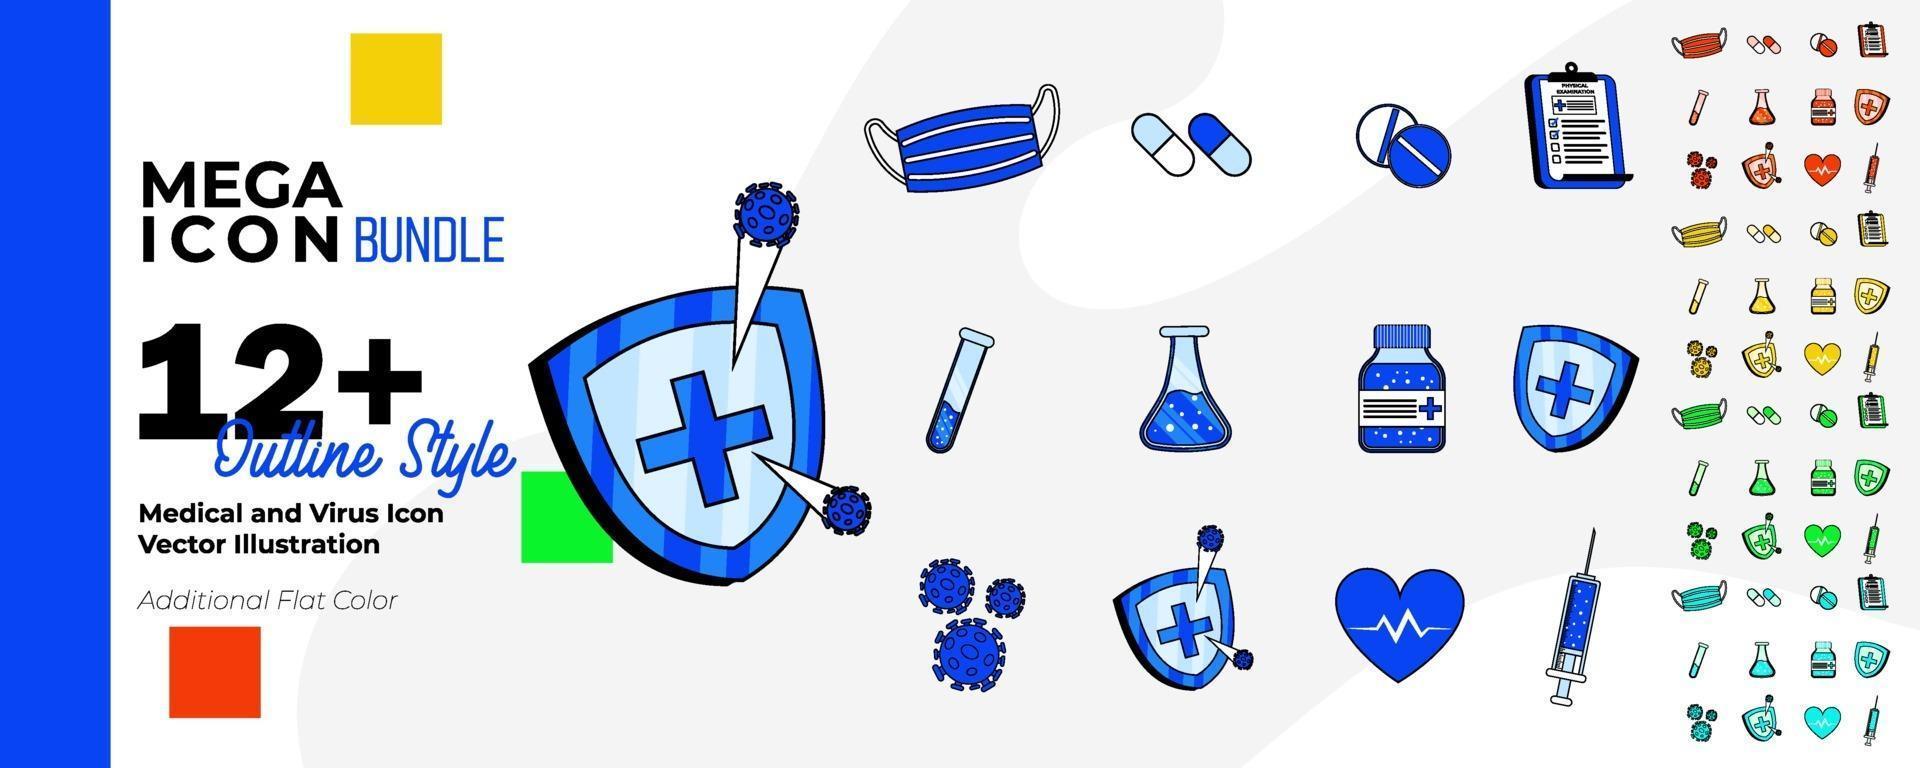 medicinsk och hälsovård ikonuppsättning med en färgstil och konturteckningar. vektor illustration